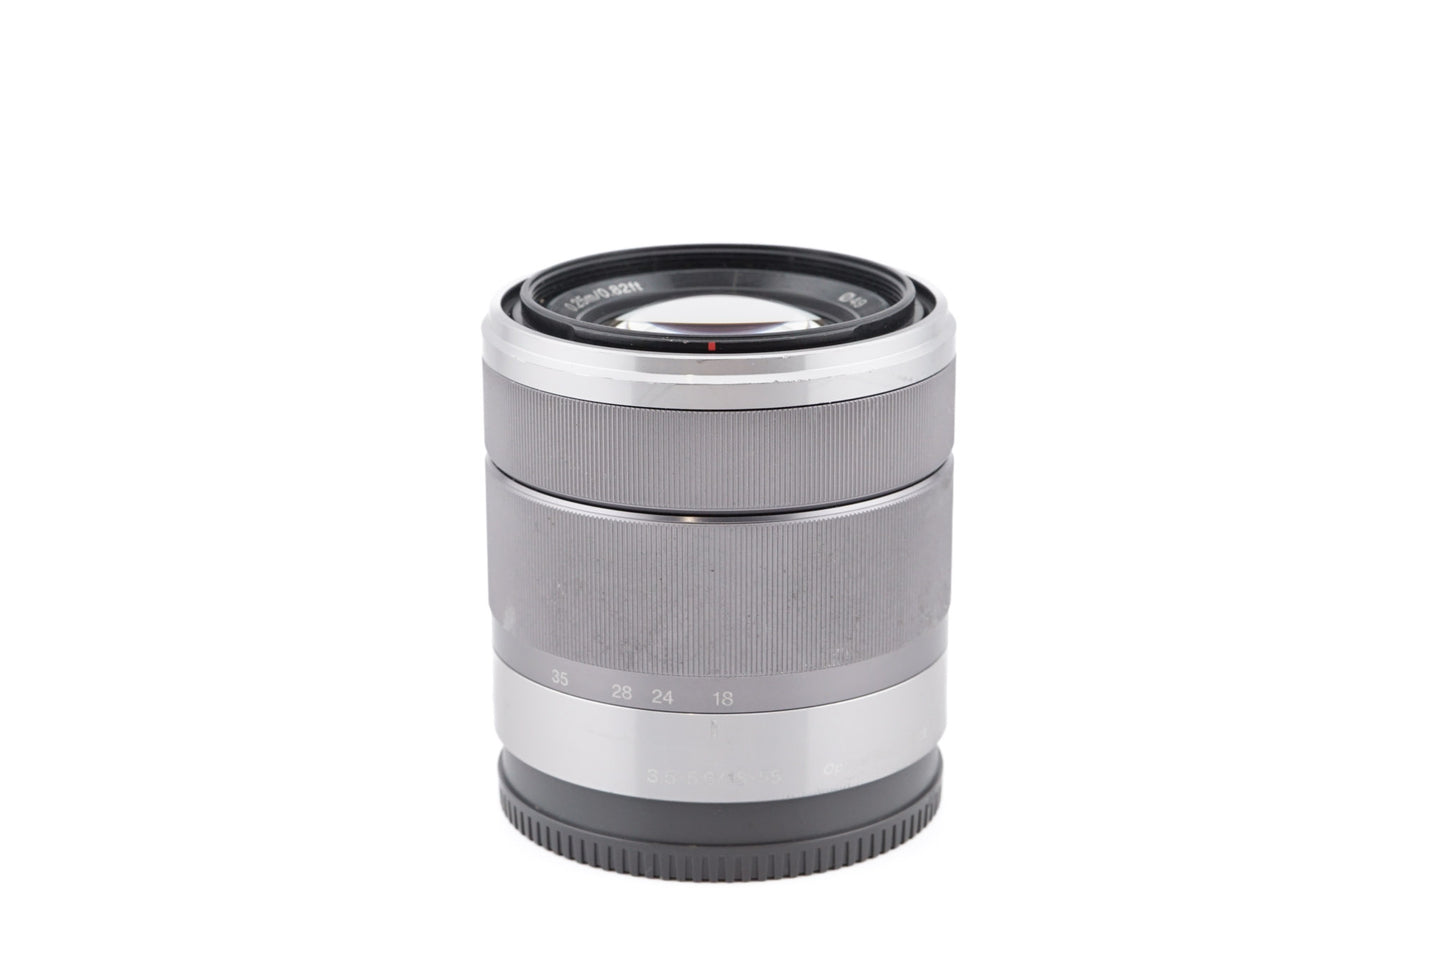 Sony 18-55mm f3.5-5.6 OSS - Lens